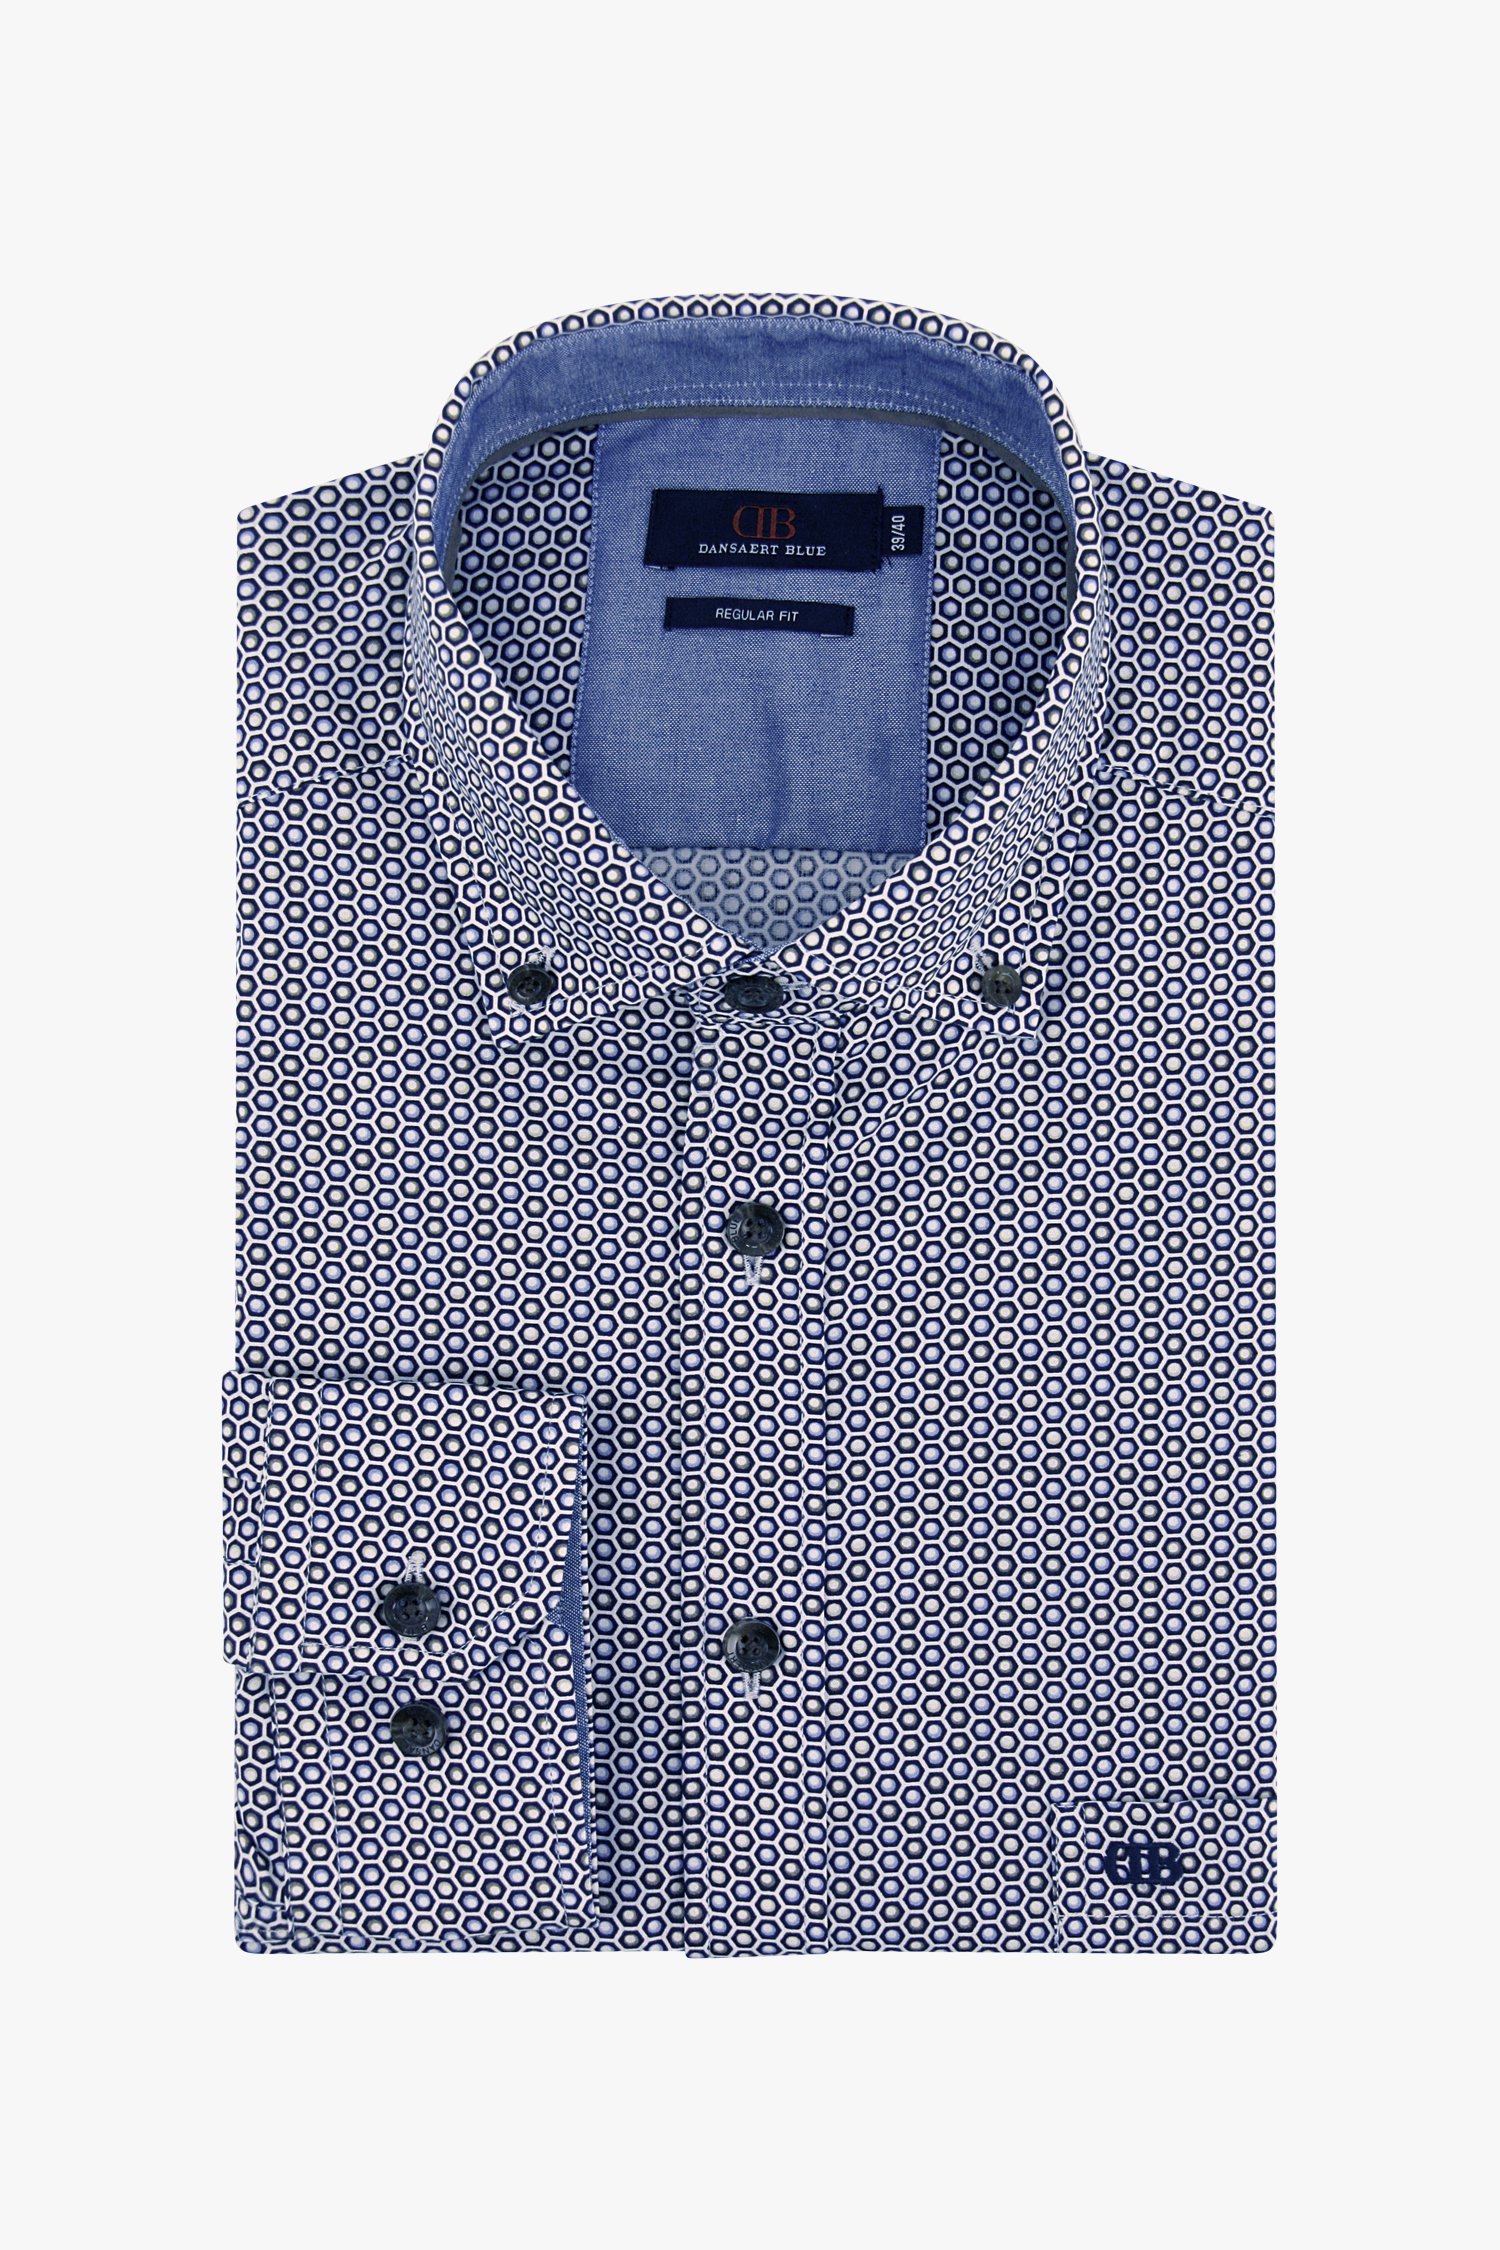 Hemd met fijne print - regular fit van Dansaert Blue voor Heren